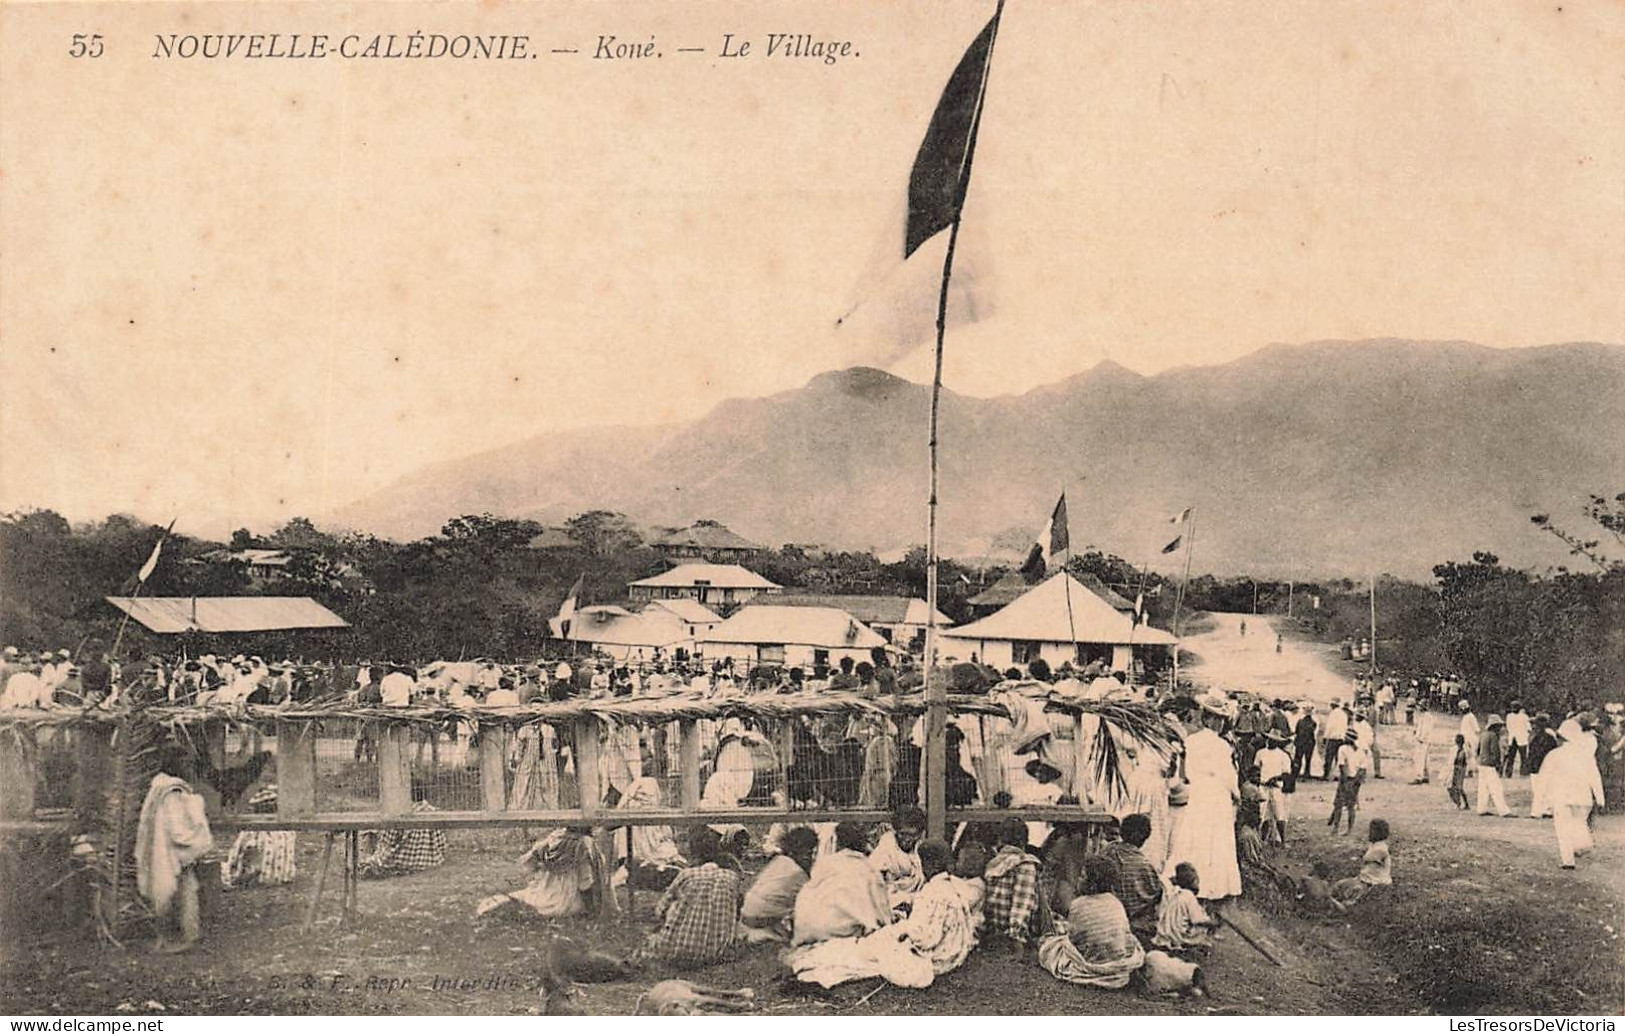 FRANCE - Nouvelle Calédonie - Roué - Le Village - Animé - Jour De Marché - B&F Repro Interdite - Carte Postale Ancienne - Nouvelle Calédonie